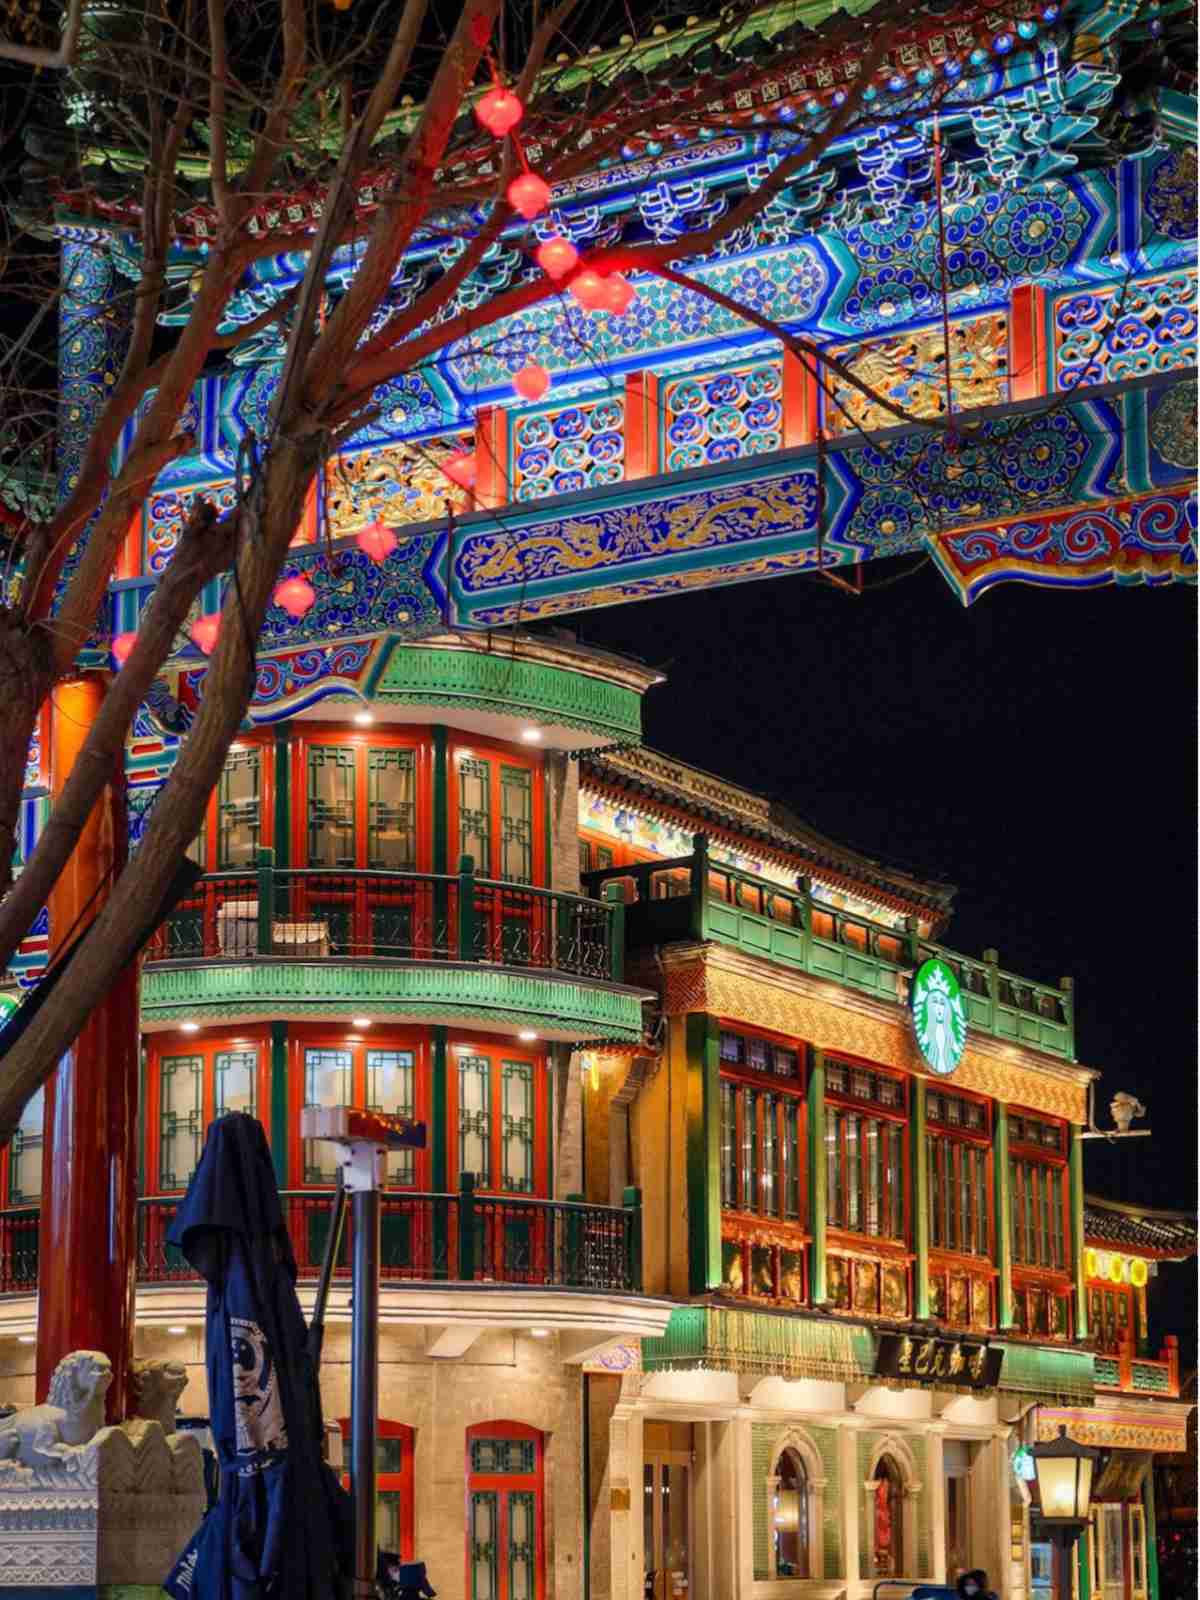 Beijing Qianmen Street archway